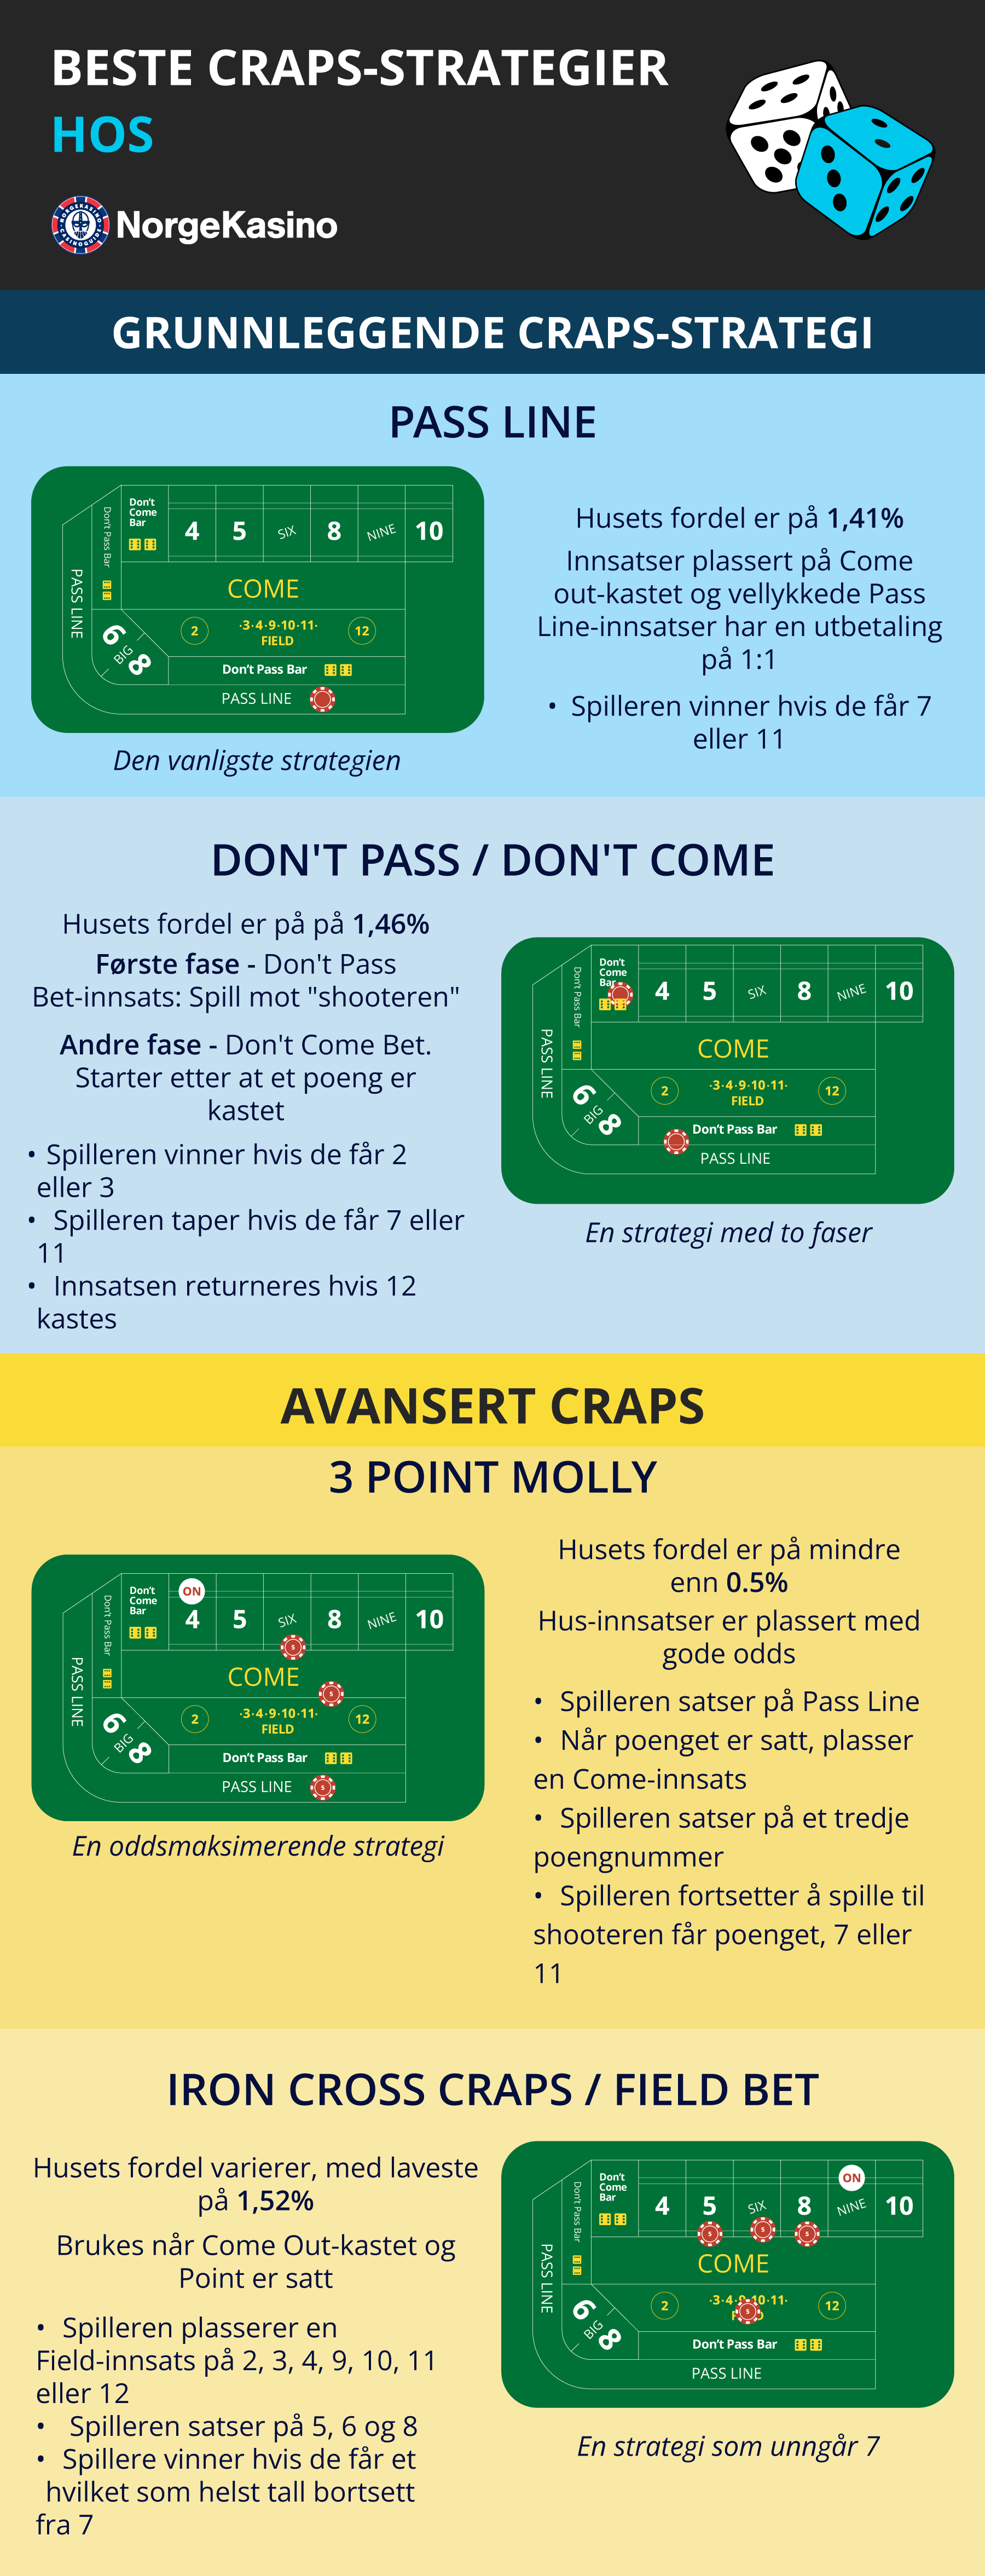 Infografikk av craps-strategier hos NorgeKasino